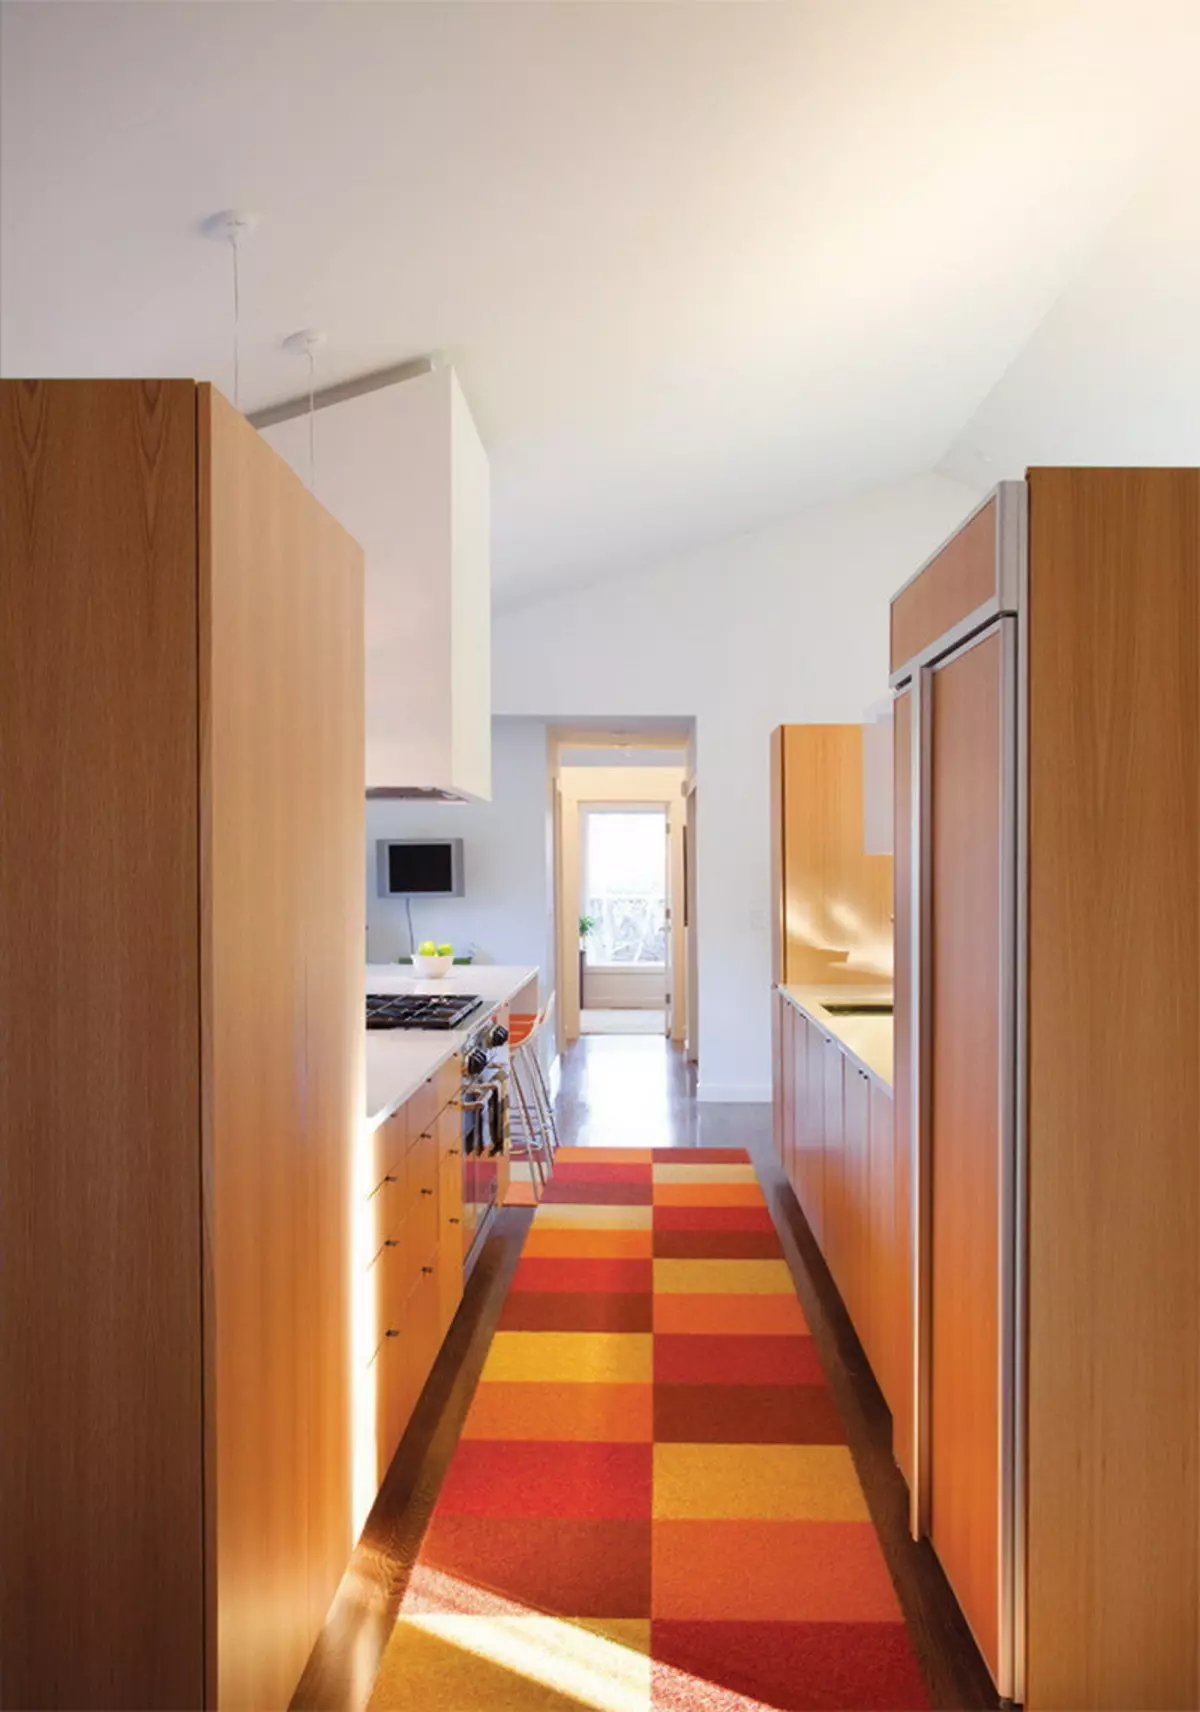 Virtuvės įėjimo salė (62 nuotraukos): virtuvės išdėstymas kartu su koridoriumi privačiame name ir bute. Interjero dizaino virtuvės salės viename stiliuje 9487_51